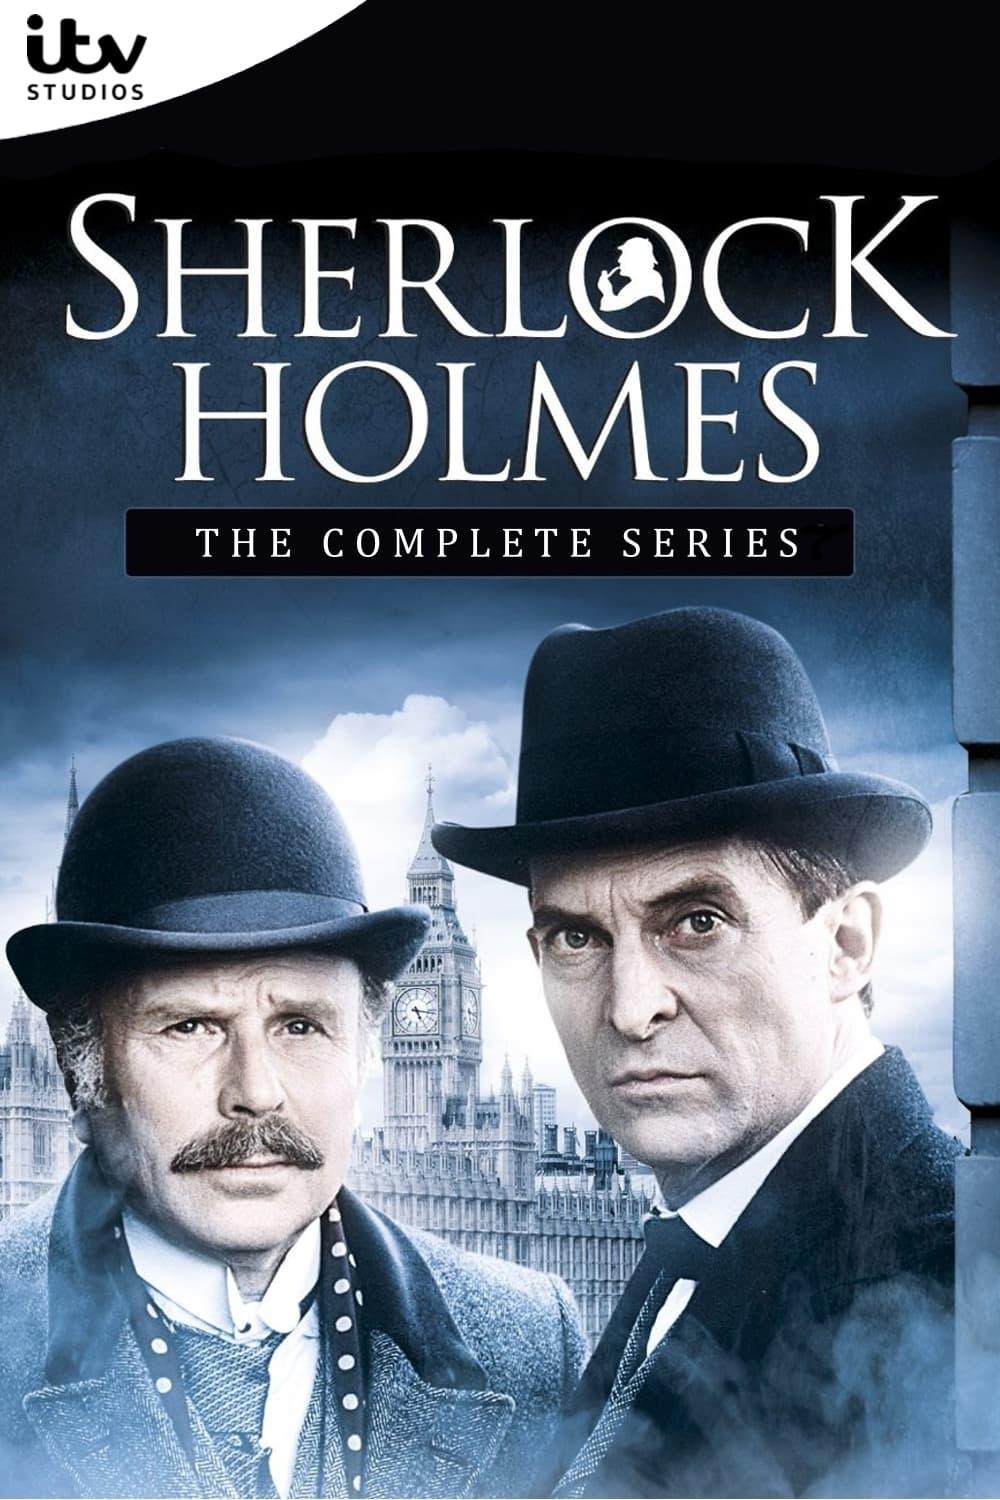 Les saisons de Sherlock Holmes sont-elles disponibles sur Netflix ou autre ?